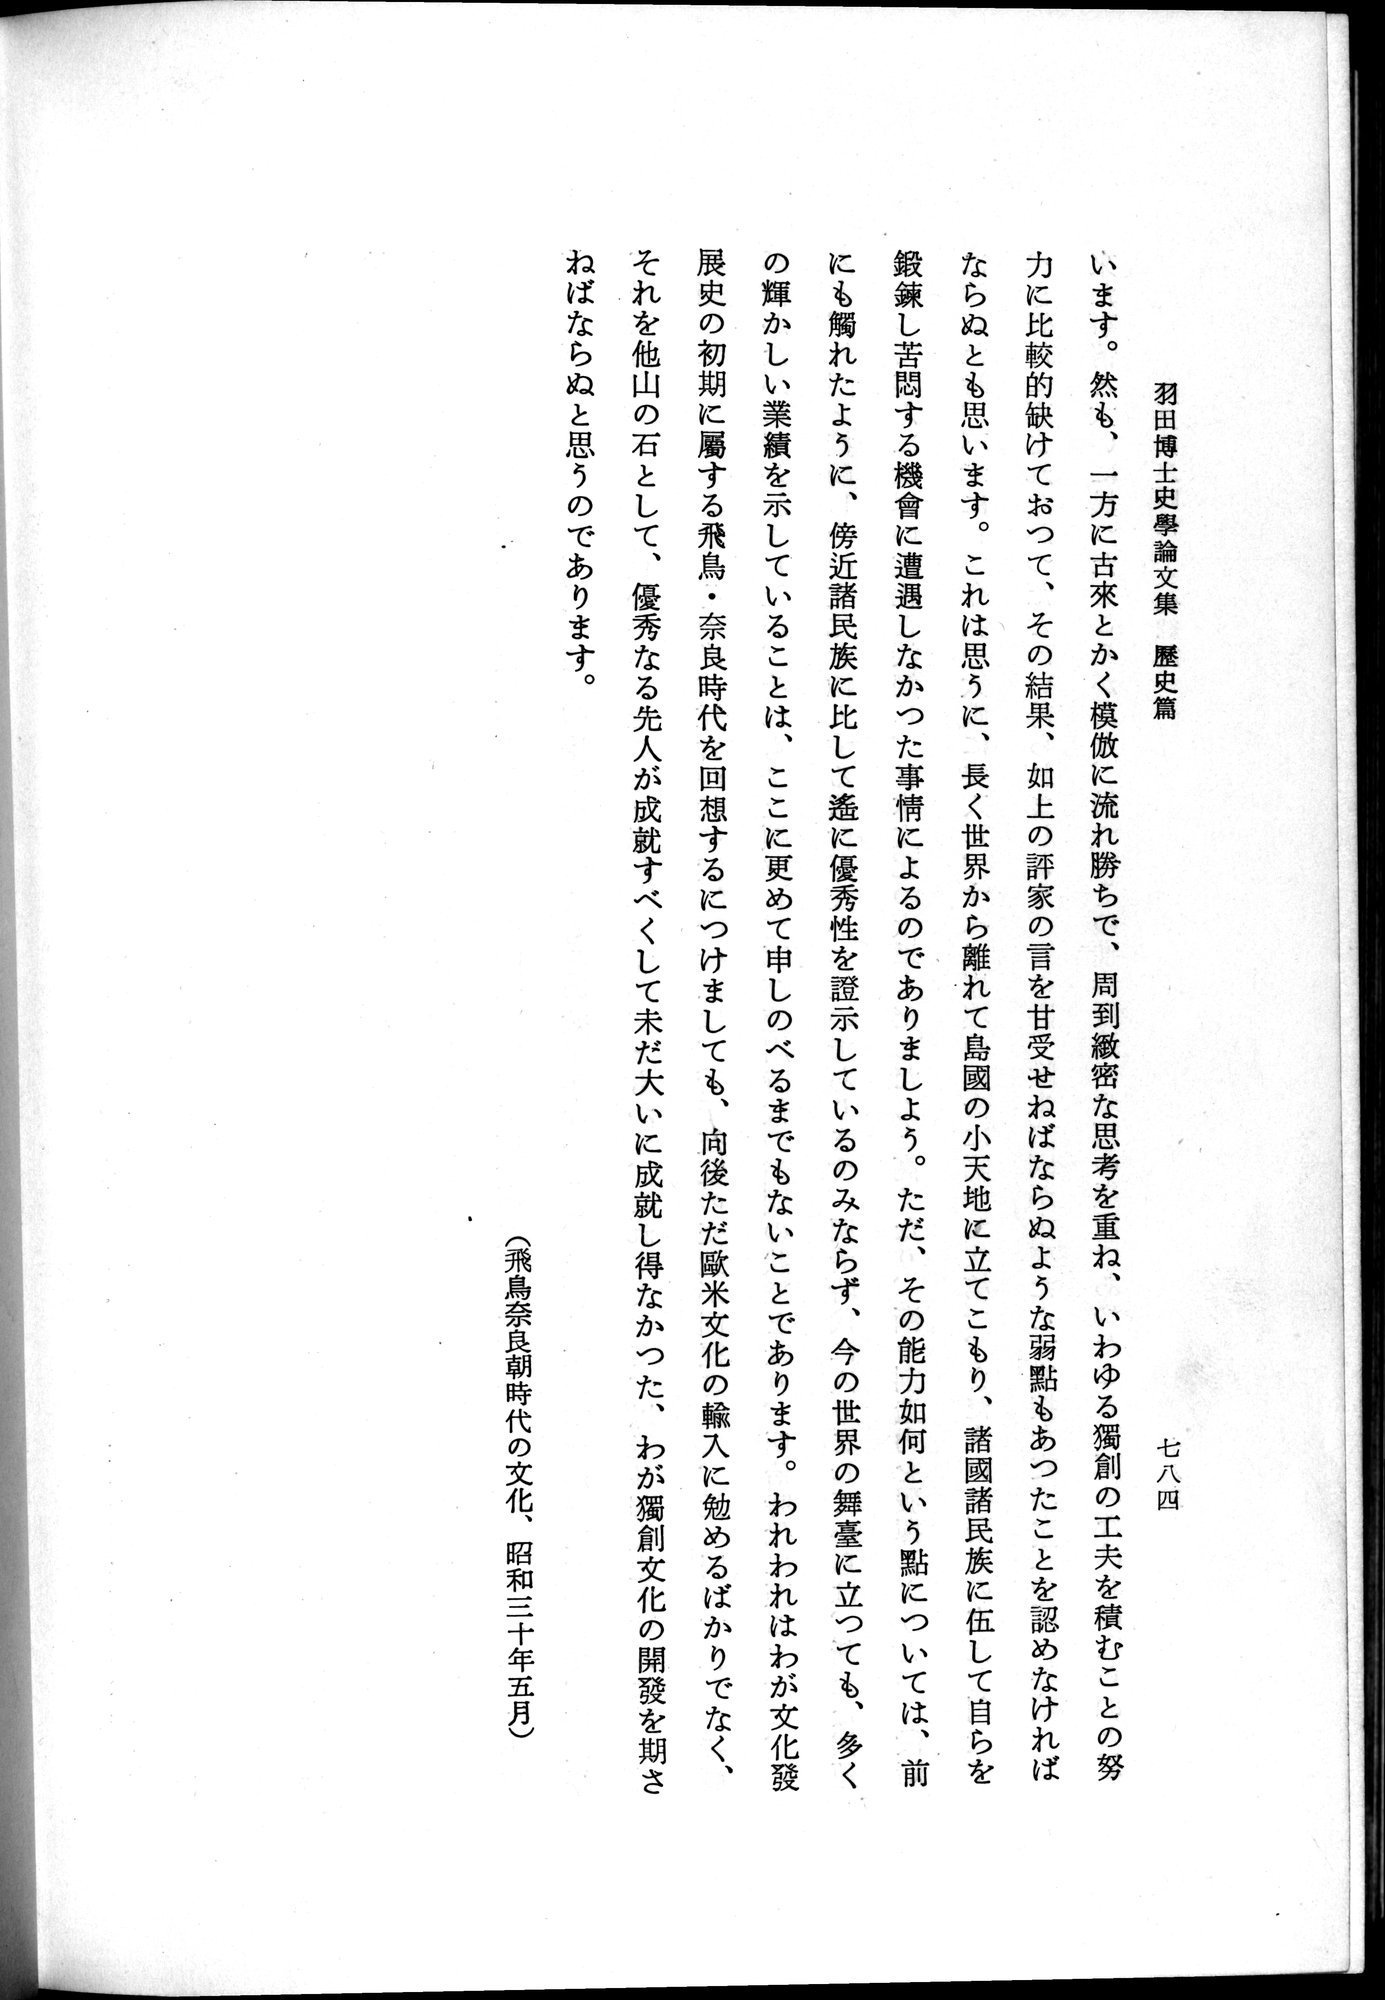 羽田博士史学論文集 : vol.1 / Page 822 (Grayscale High Resolution Image)